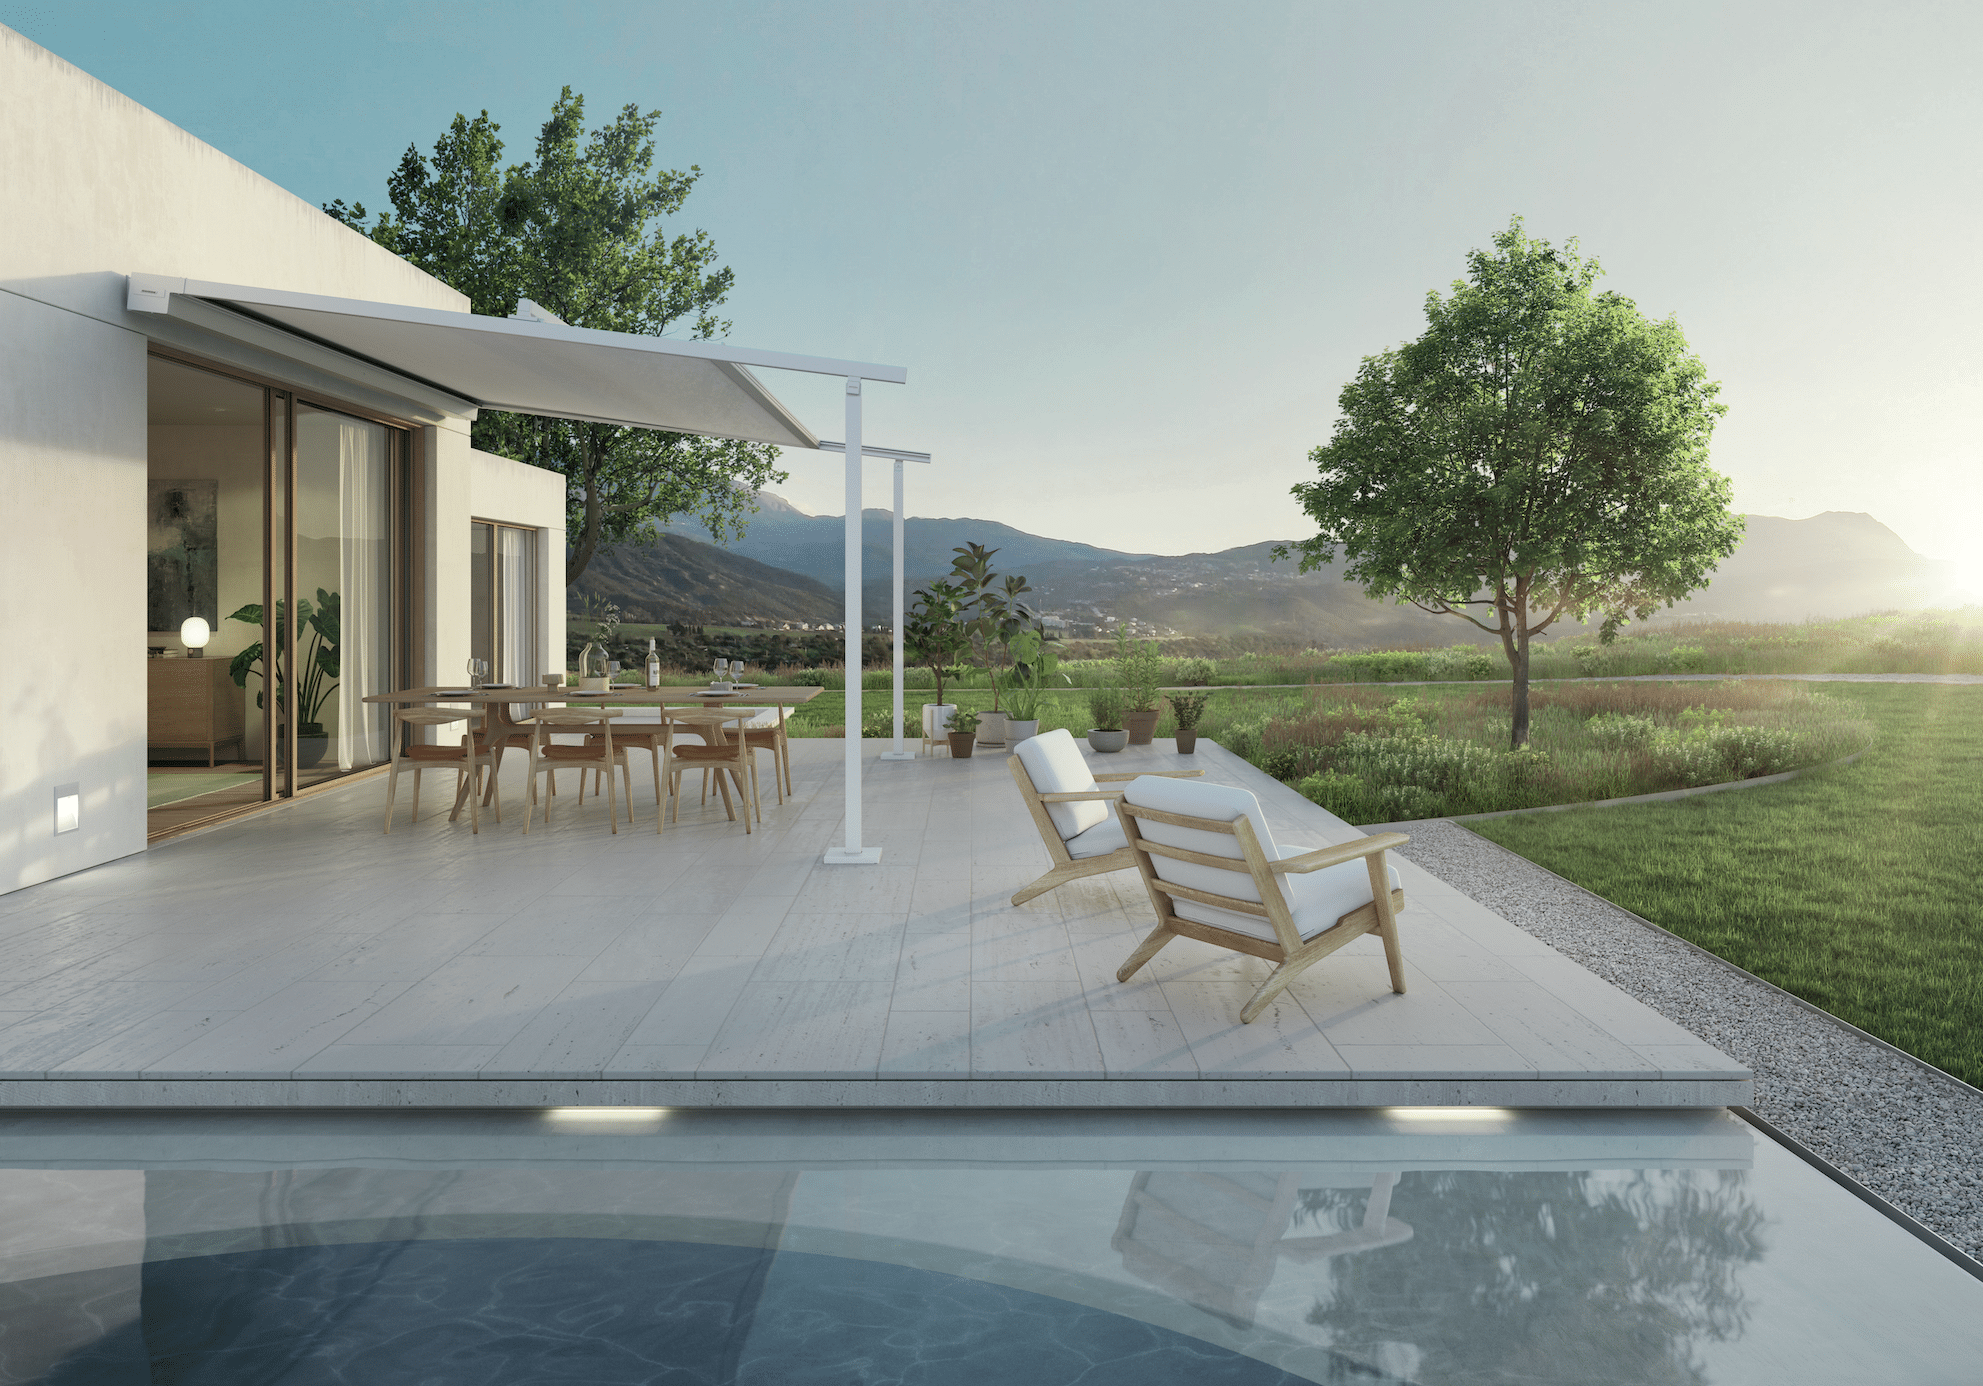 WAREMA zeigt ein modernes Haus mit Flachdach, einer Sonnenterrasse mit überdachtem Bereich, Markise, Holzboden und einer großen Essgruppe und Sonnenliegen neben dem Pool.